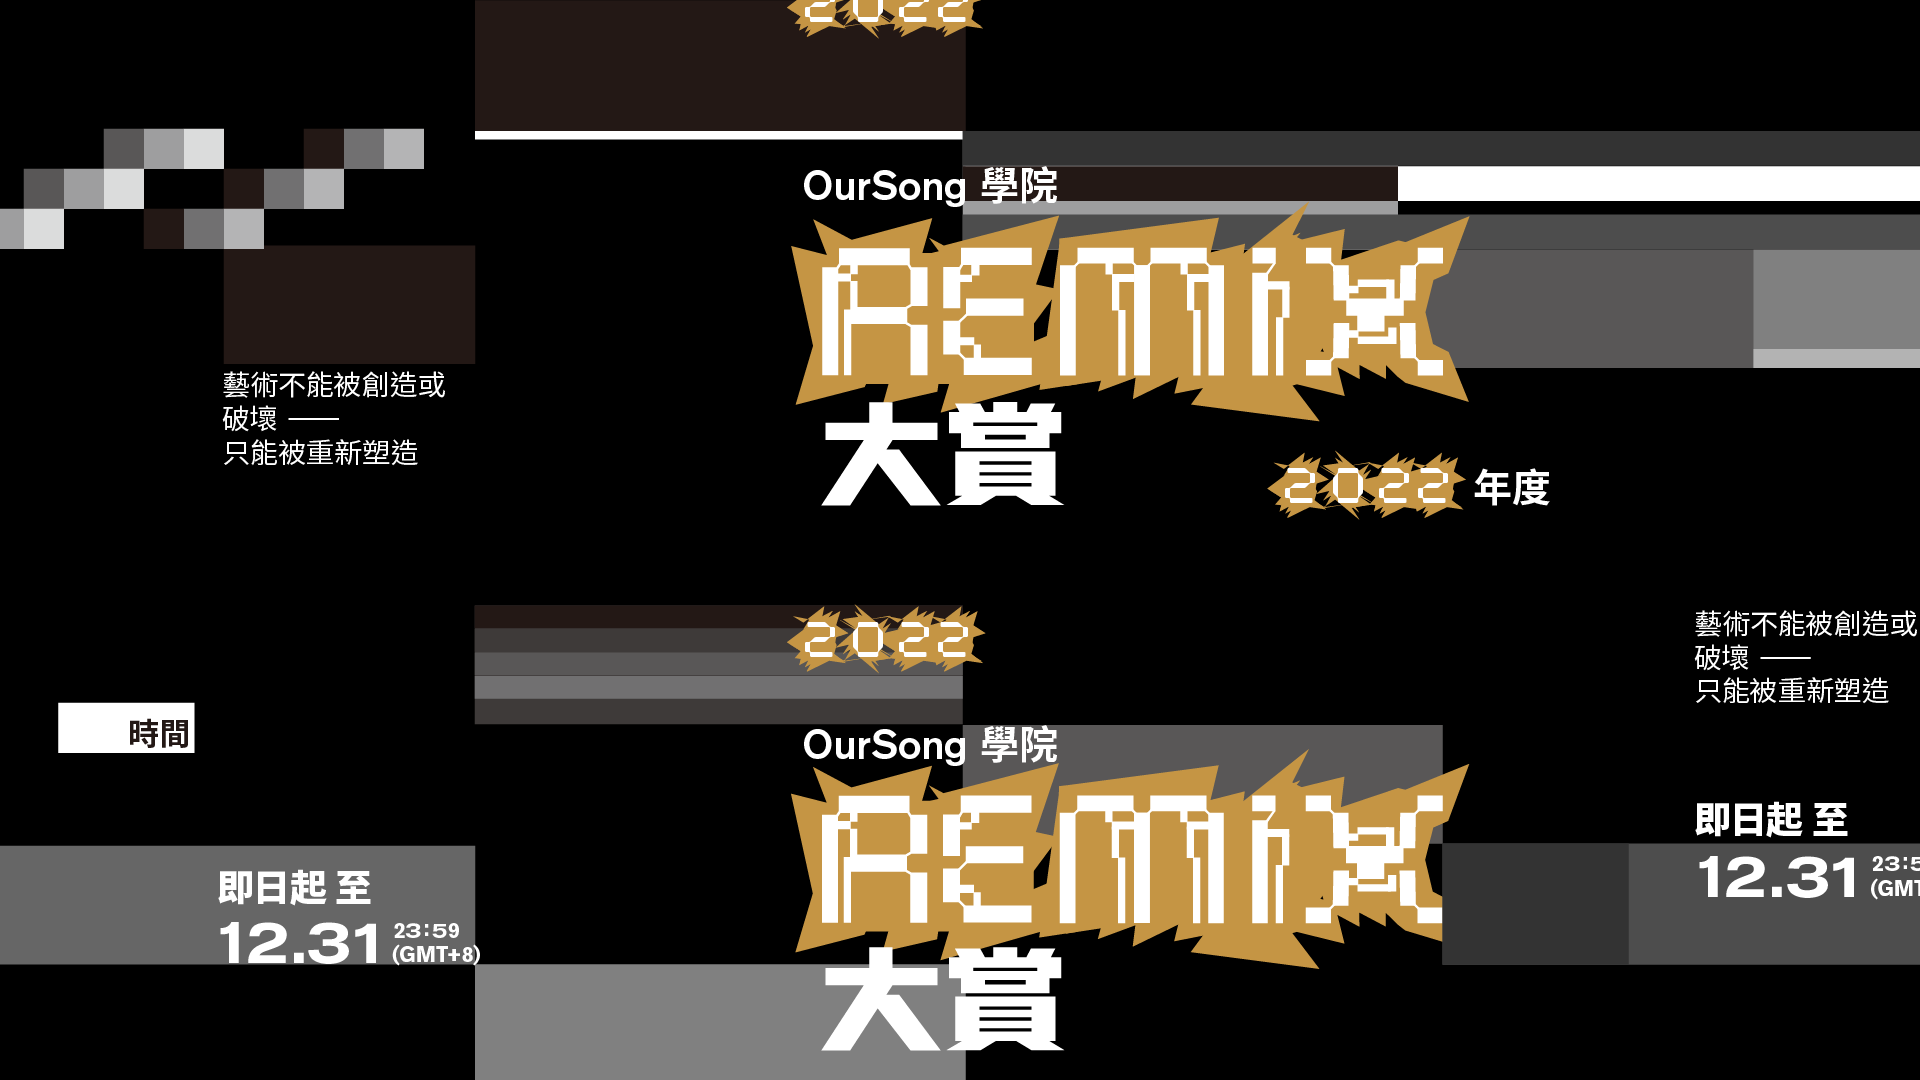 remix-1920x1080-TC.png